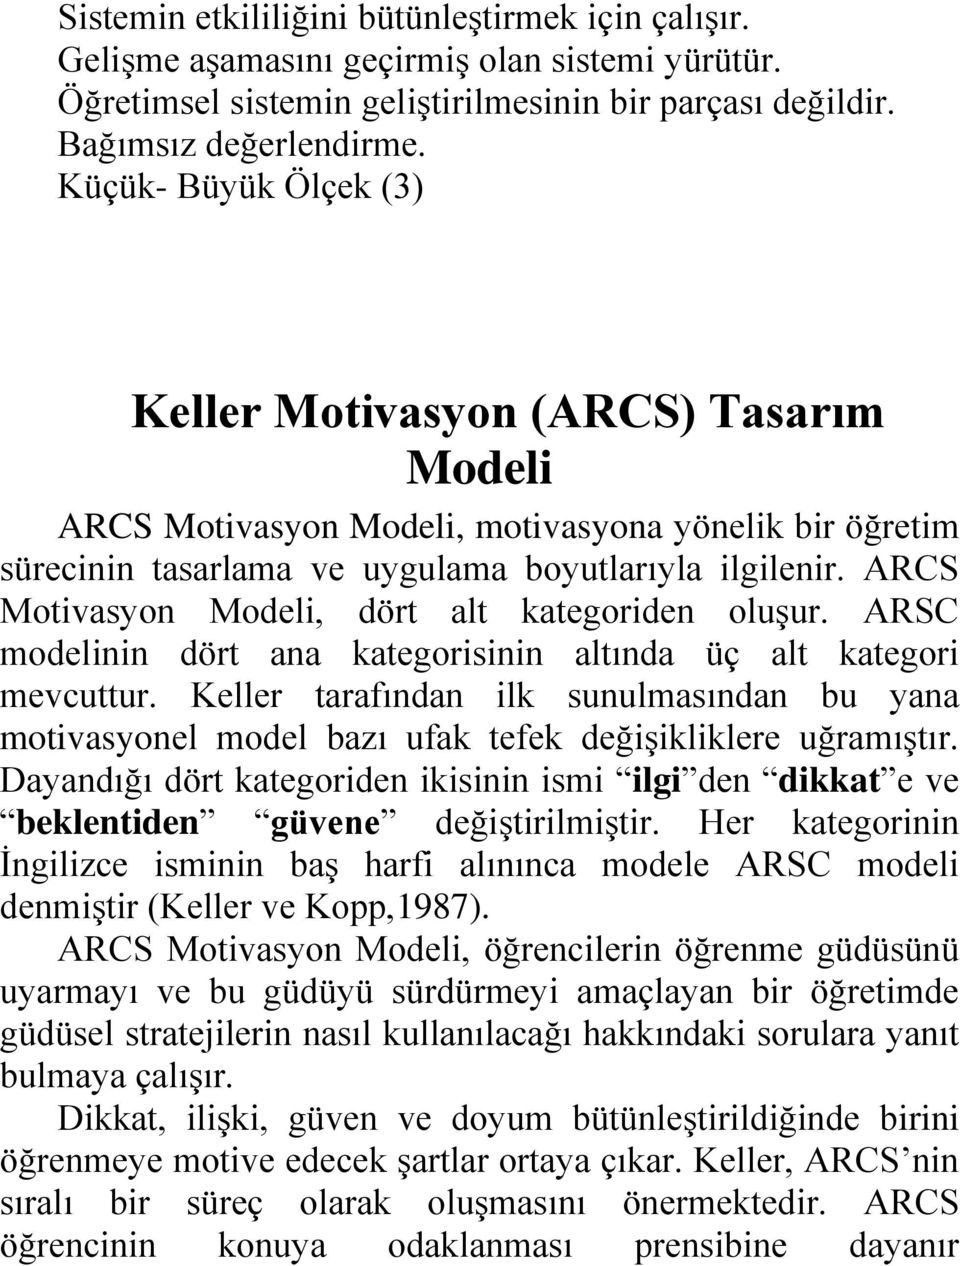 ARCS Motivasyon Modeli, dört alt kategoriden oluşur. ARSC modelinin dört ana kategorisinin altında üç alt kategori mevcuttur.